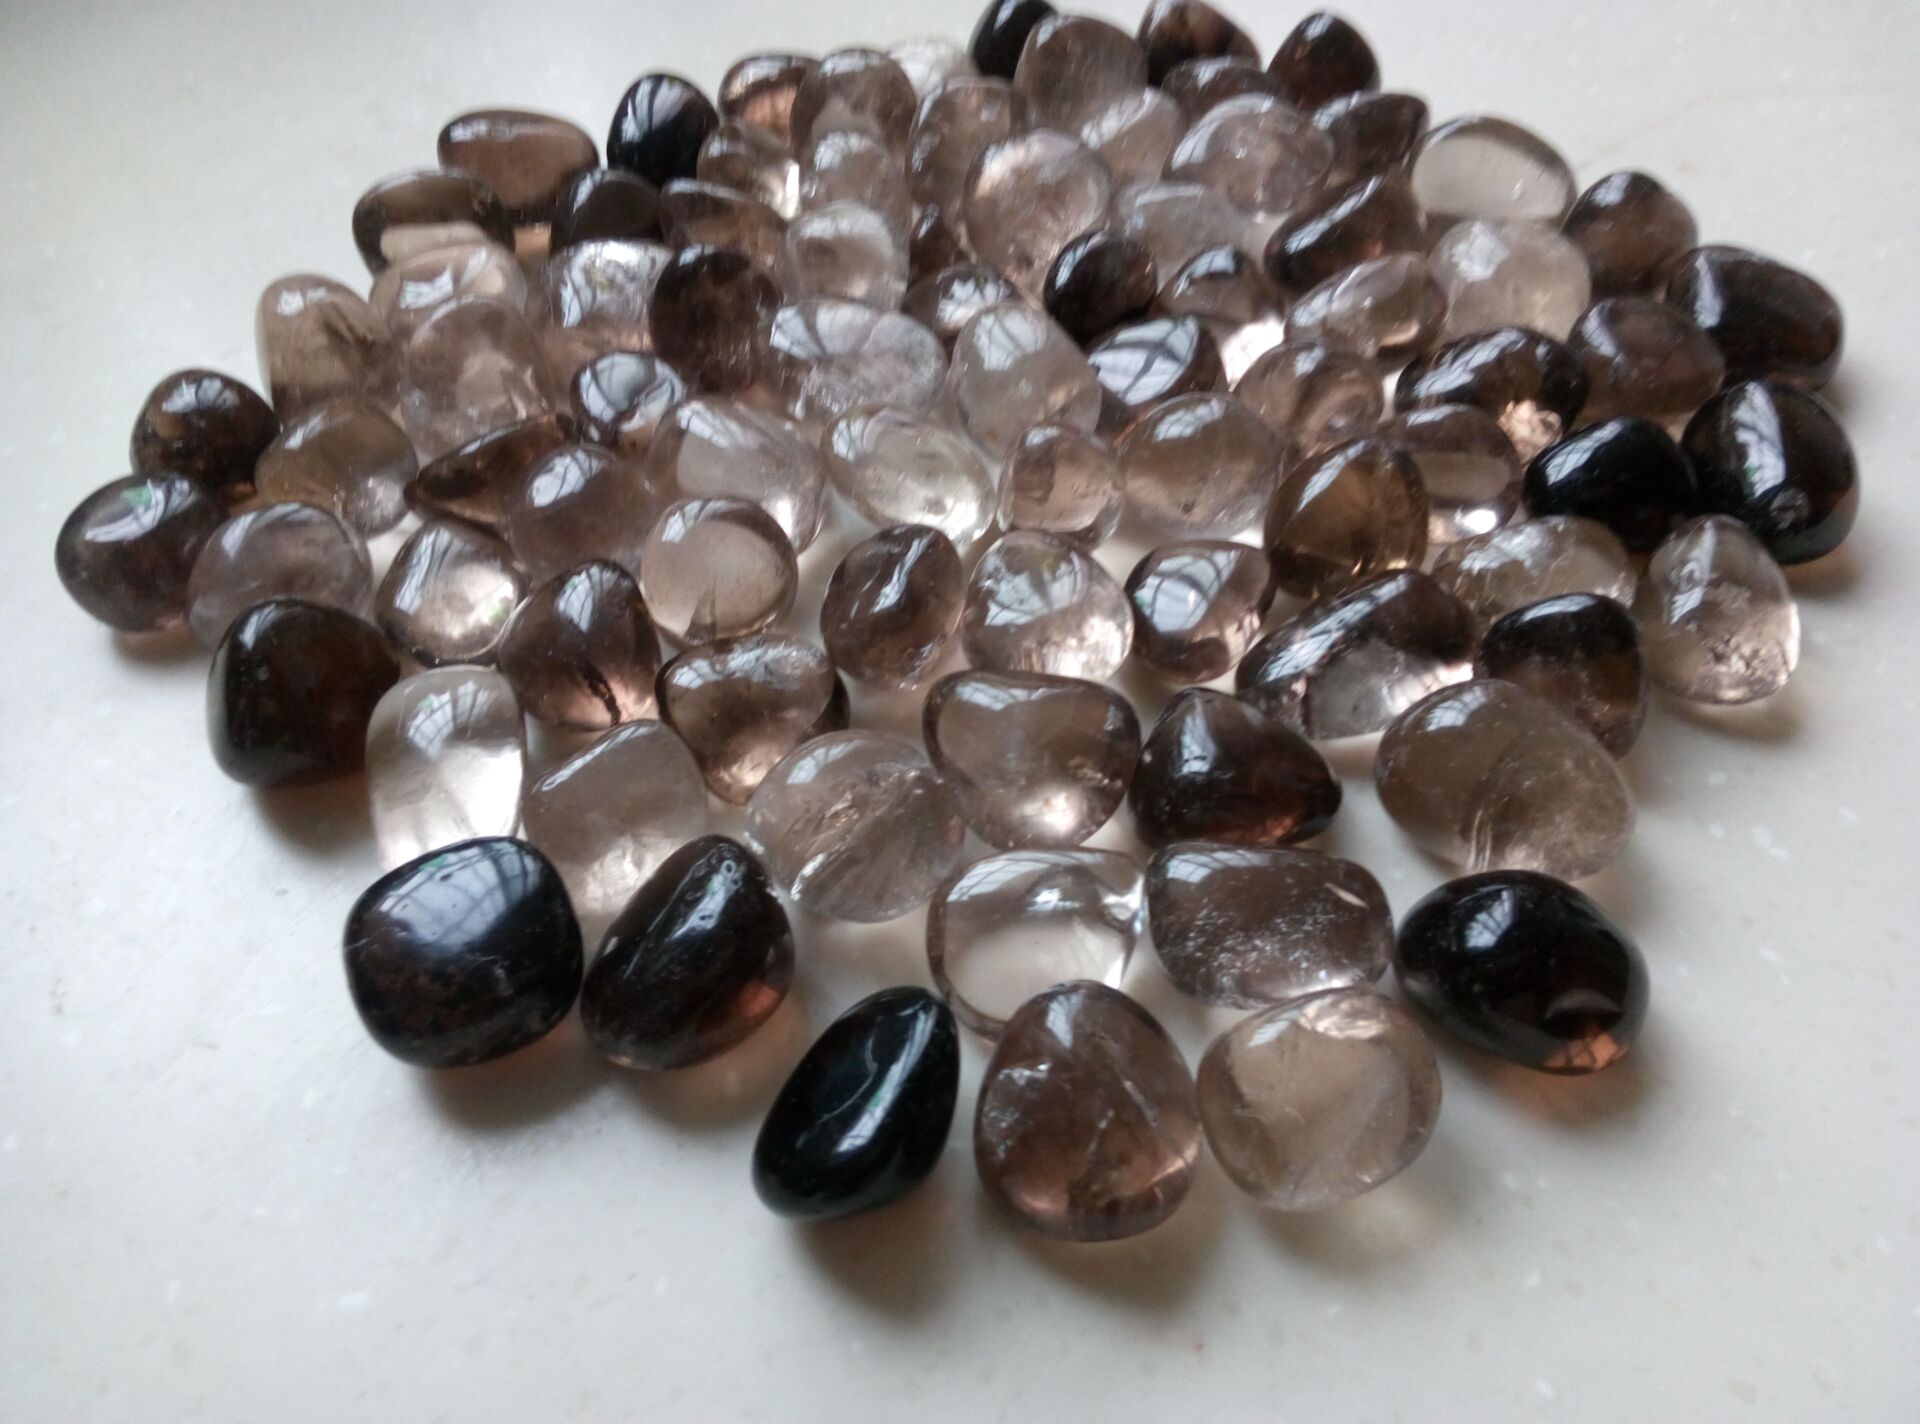 3pc Natural Smoky Quartz Tumbled Quartz Crystals Polished Healing